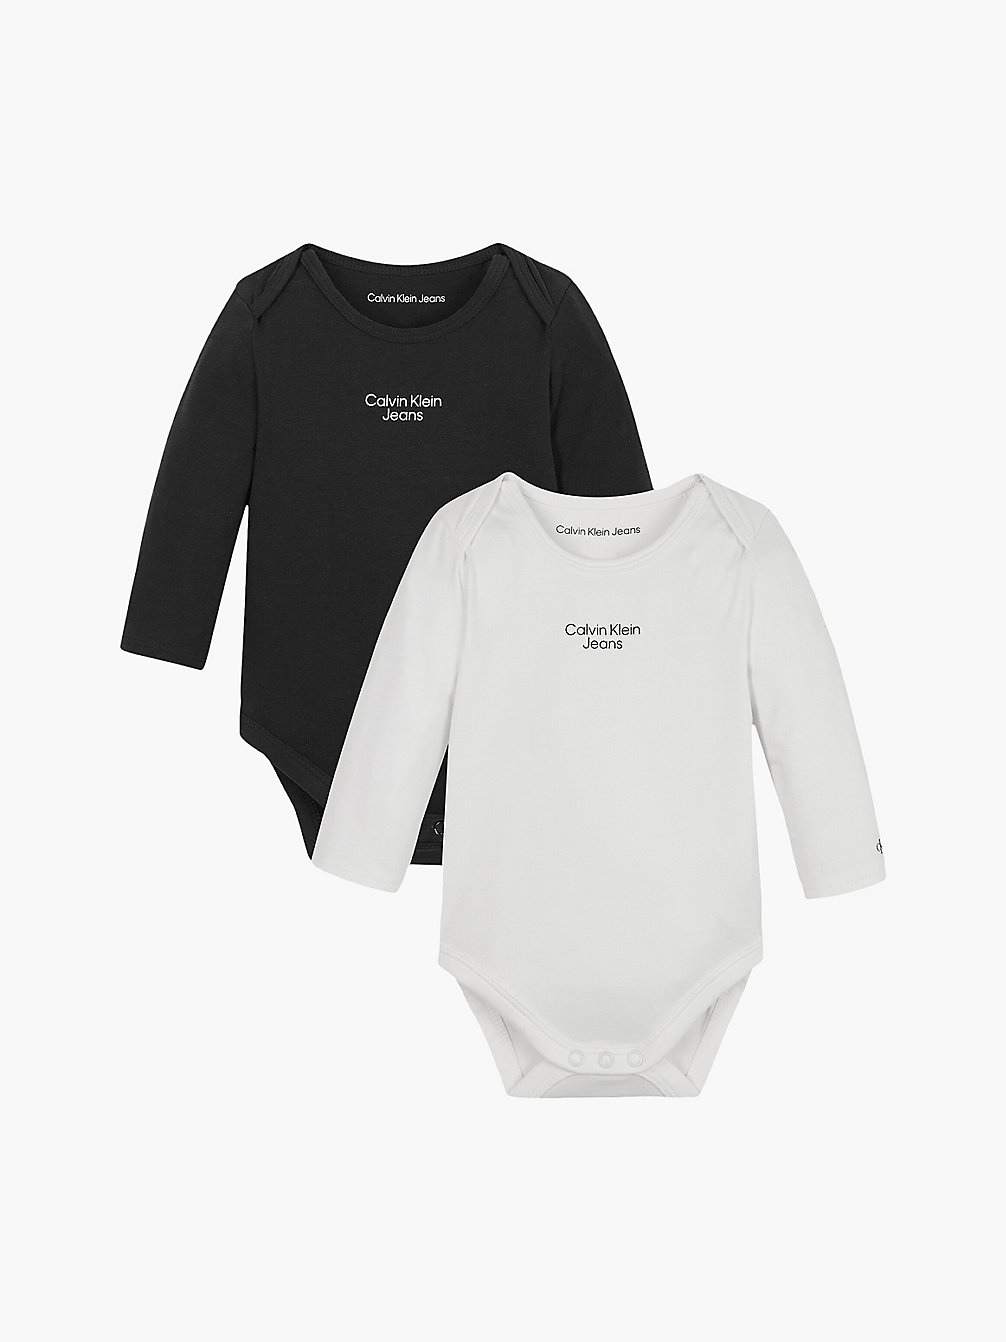 BLACK/BRIGHT WHITE > Комплект из 2 боди для новорожденных > undefined newborn - Calvin Klein